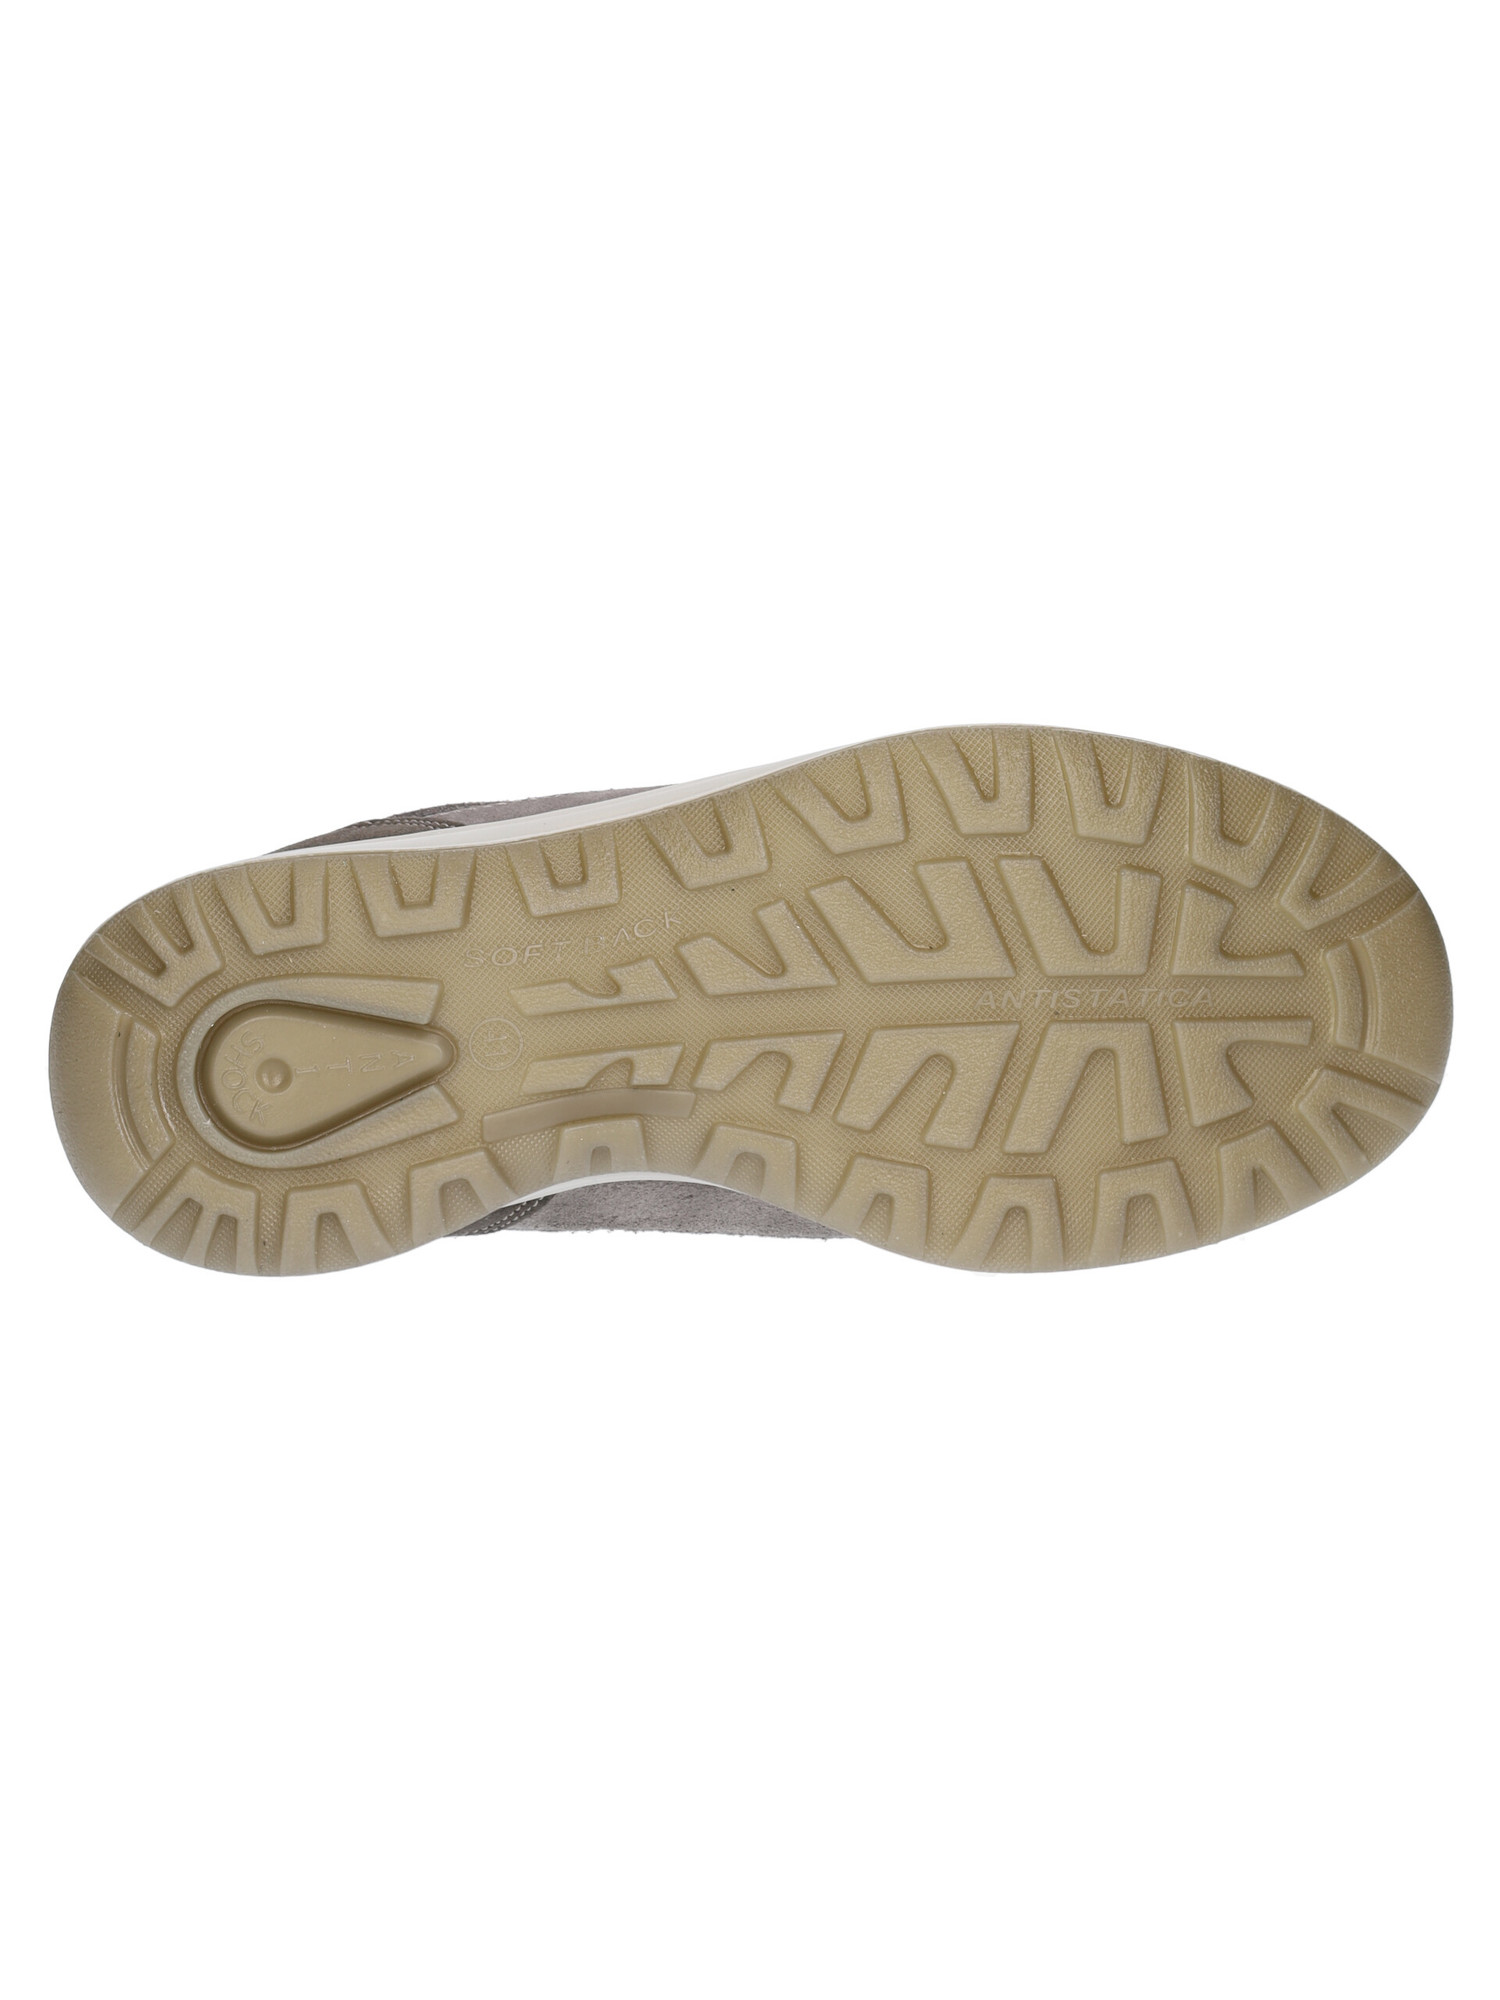 scarpa-grisport-active-da-uomo-grigia-89a325